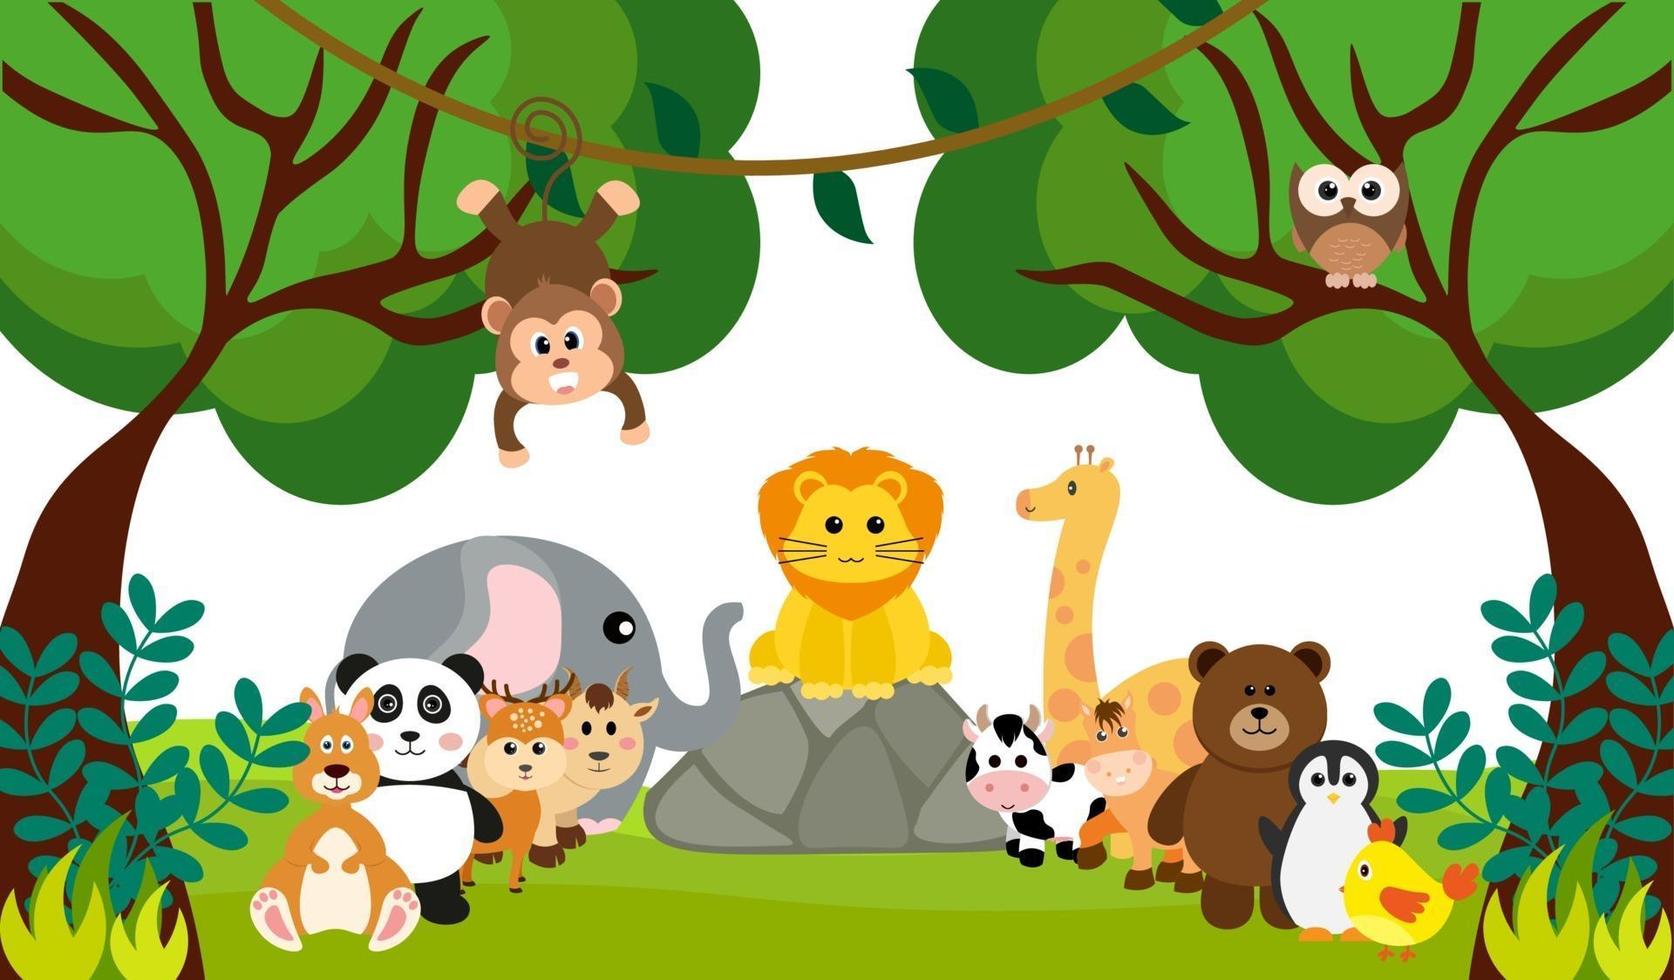 animais fofos da selva de vetor em estilo cartoon, animal selvagem, designs de zoológico para plano de fundo, roupas de bebê. personagens desenhados à mão